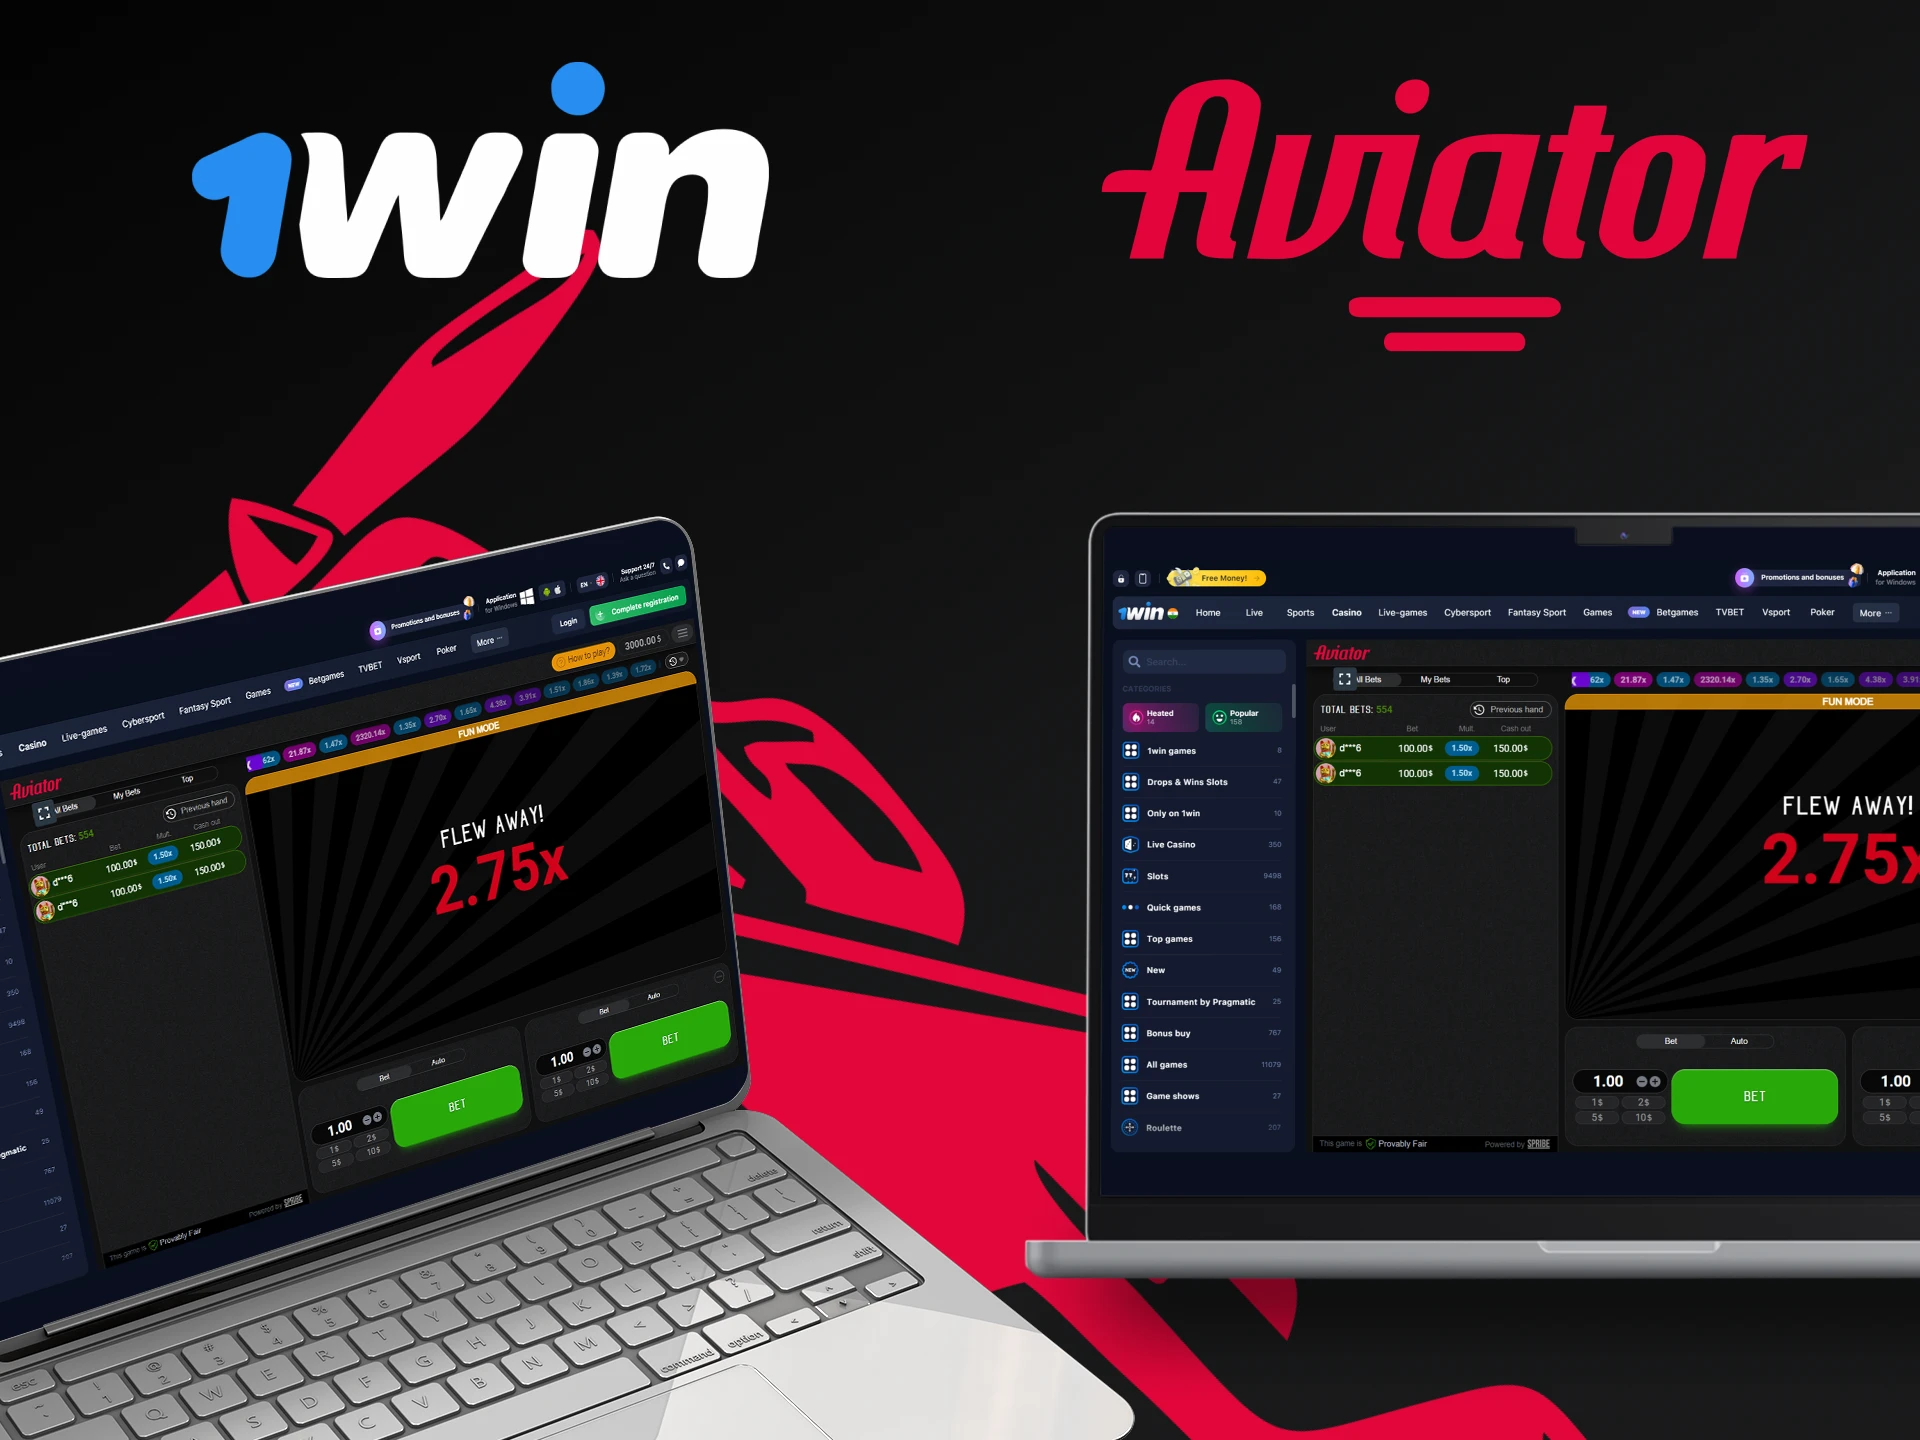 Jogue Aviator pela 1win em qualquer dispositivo.